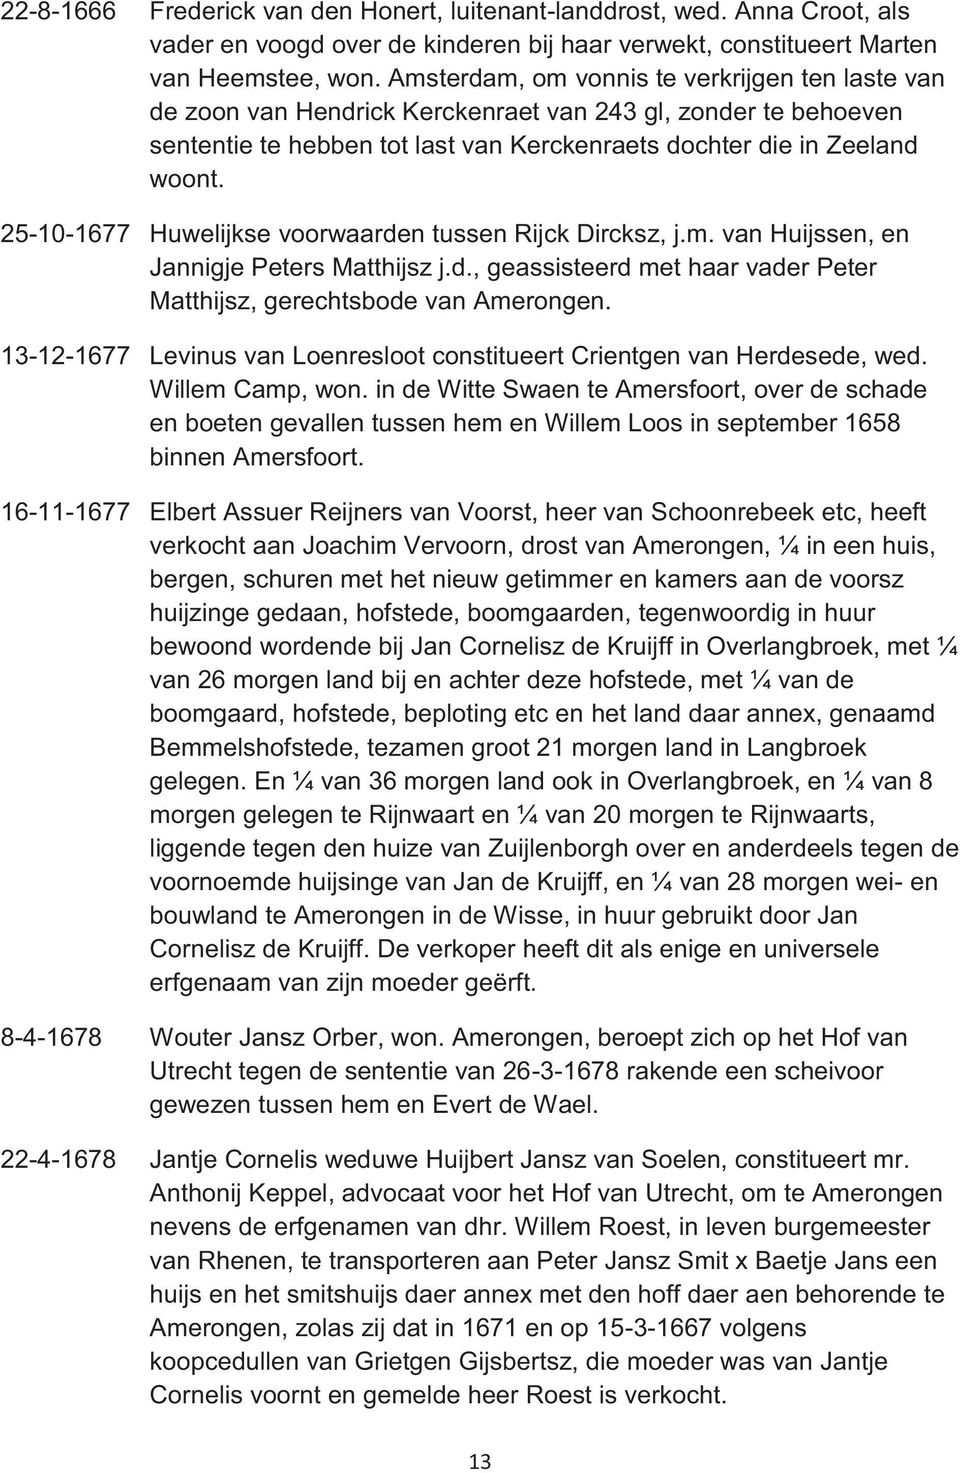 25-10-1677 Huwelijkse voorwaarden tussen Rijck Dircksz, j.m. van Huijssen, en Jannigje Peters Matthijsz j.d., geassisteerd met haar vader Peter Matthijsz, gerechtsbode van Amerongen.